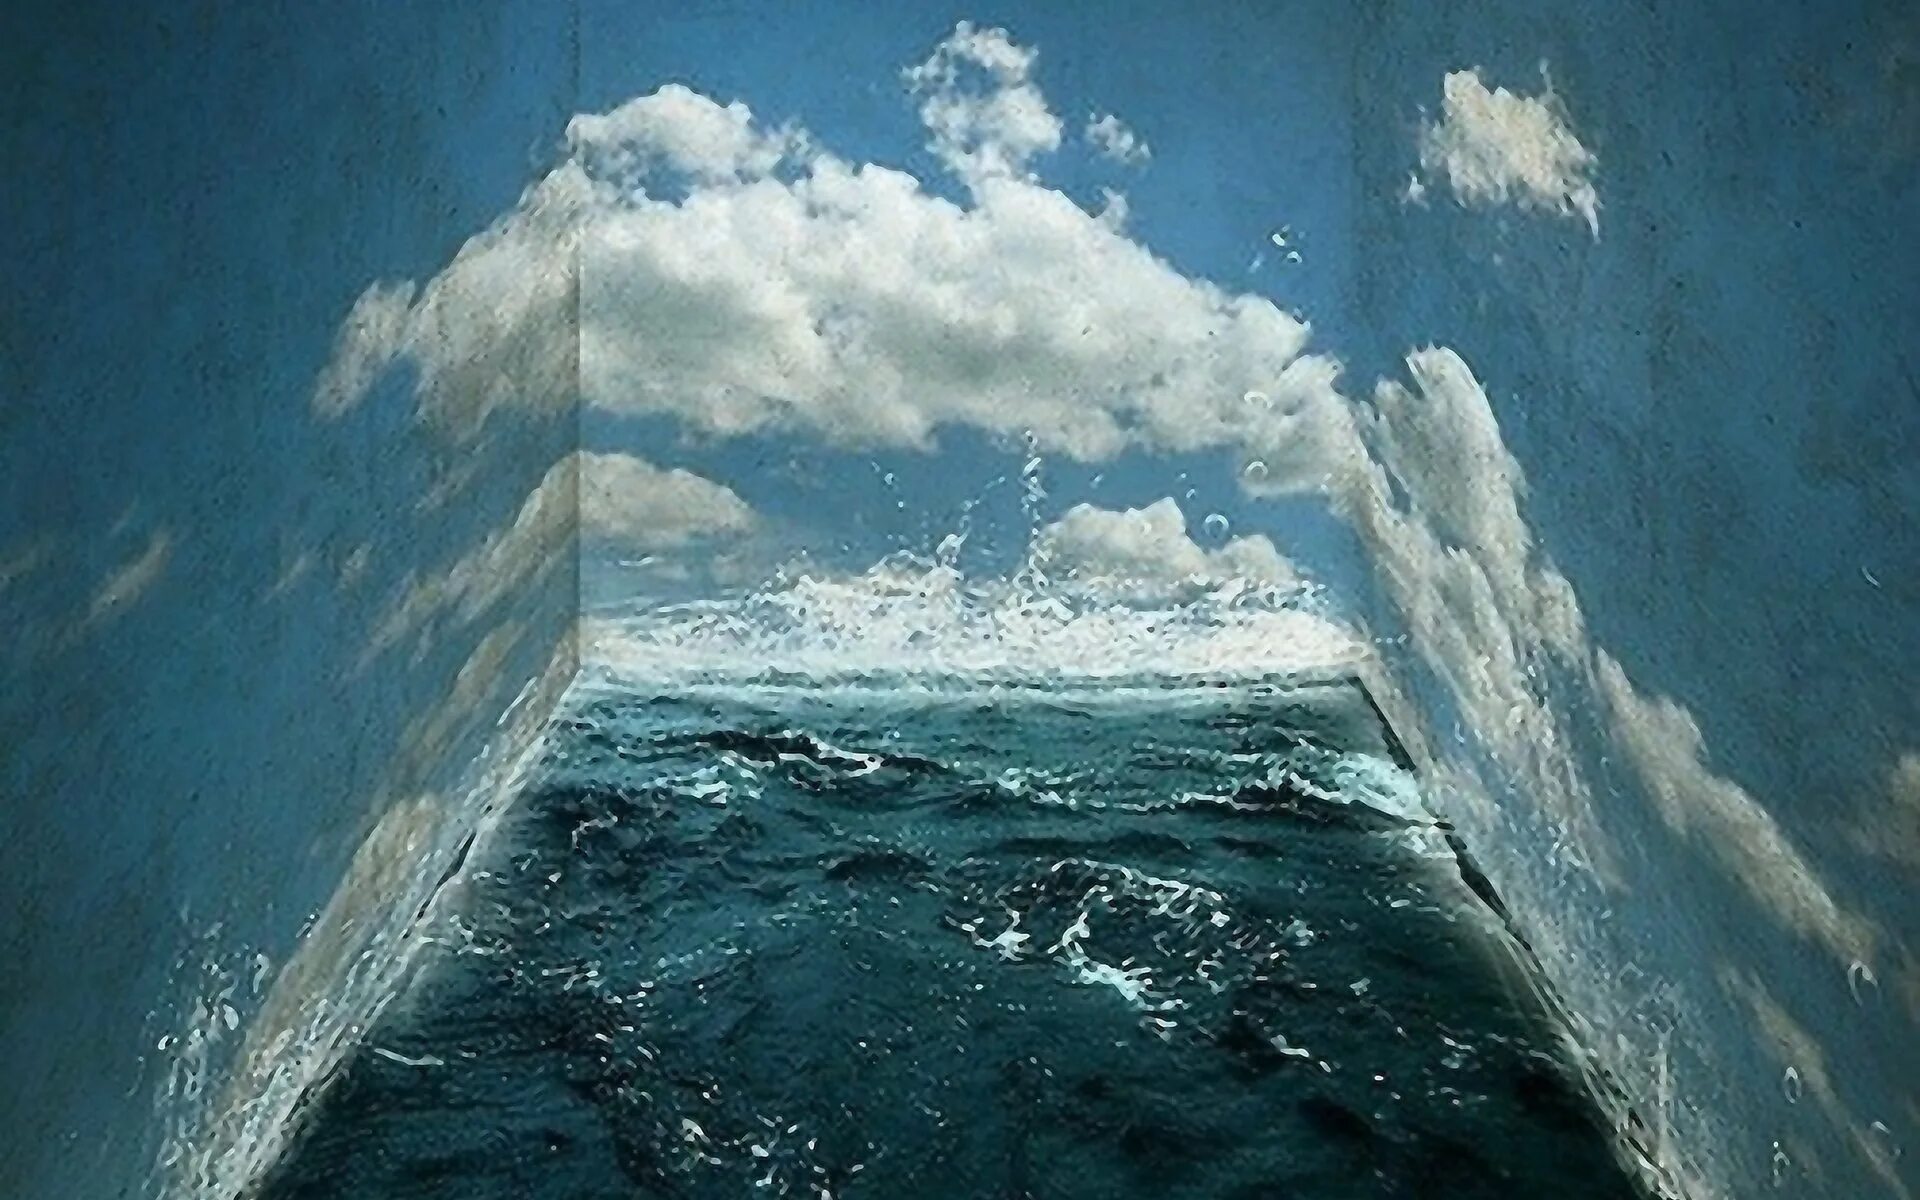 Океан внутри. Море внутри. Стена в океане. Море изнутри. Стена на дне океана